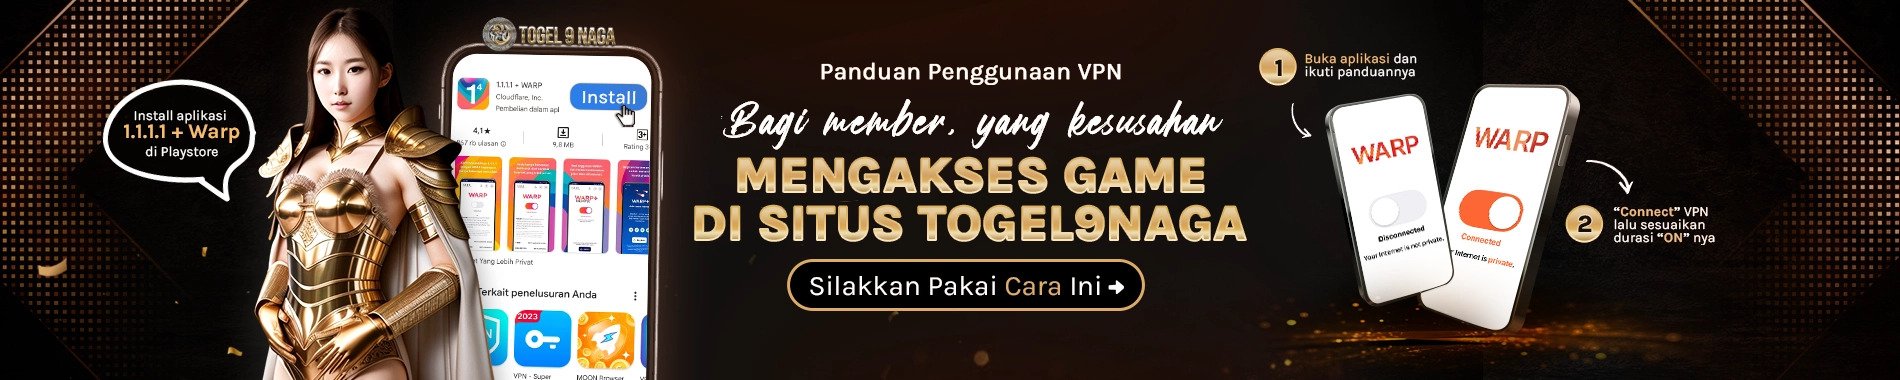 Togel9naga Panduan Penggunaan VPN